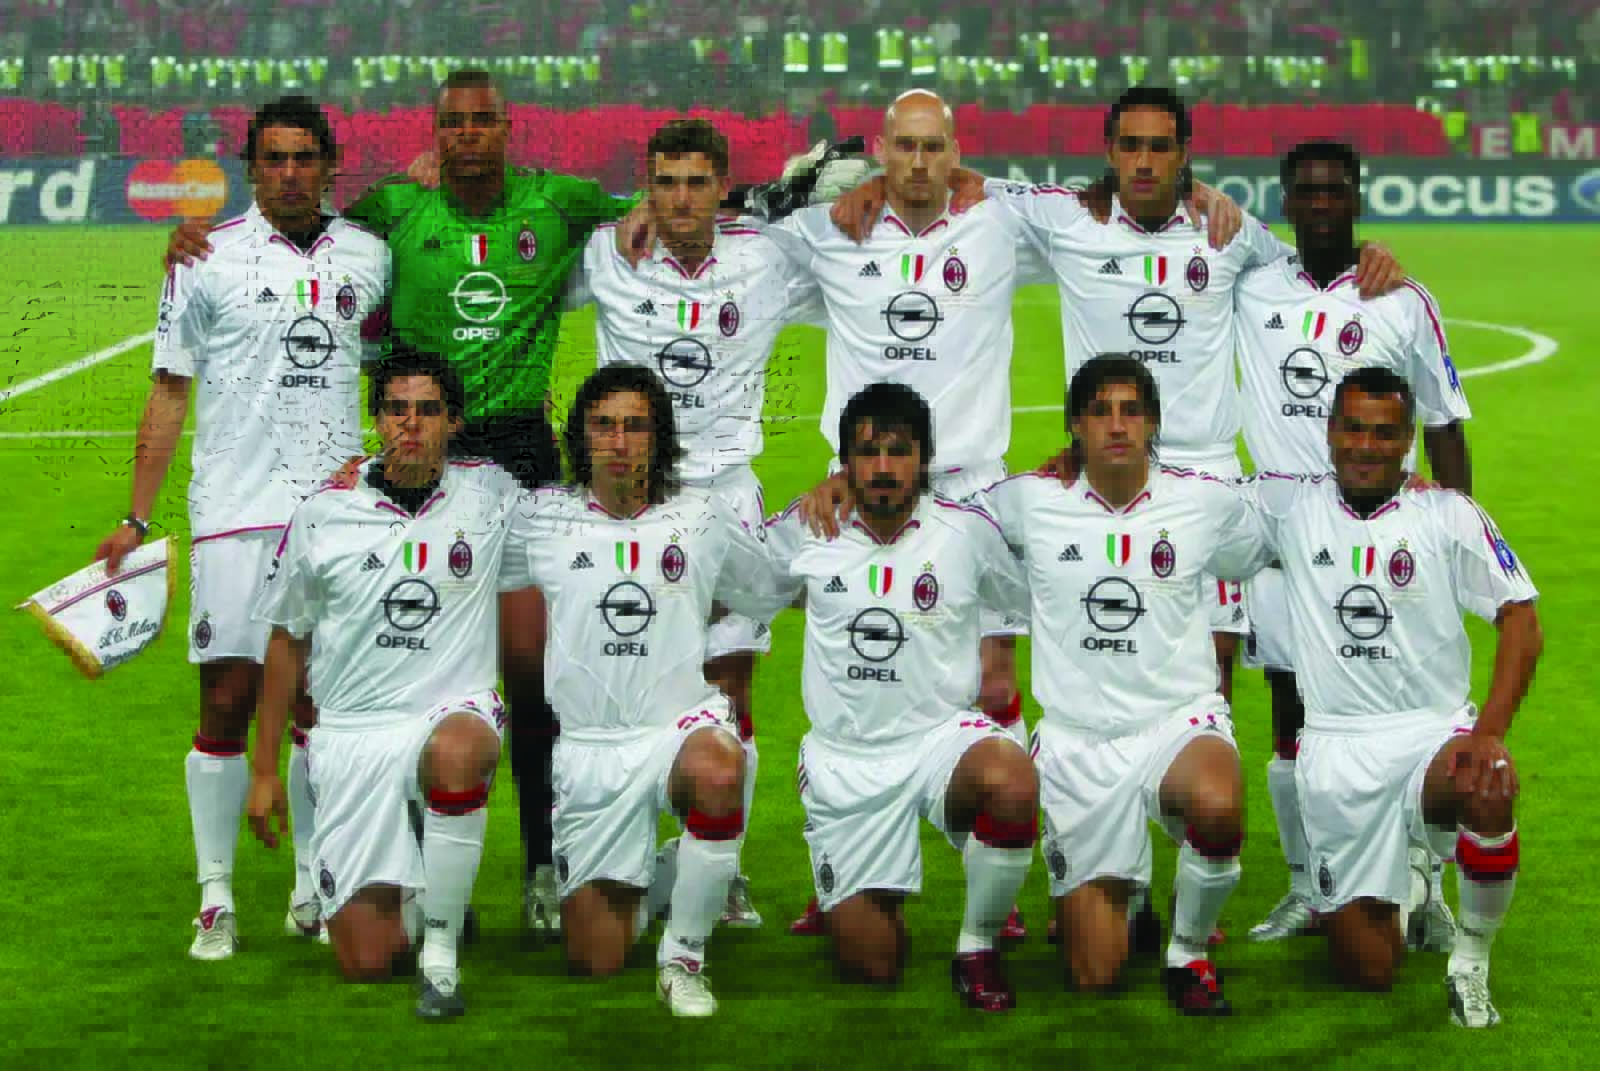 LineUp Pemain Terkemuka Ac Milan Pada Musim 2004-2005